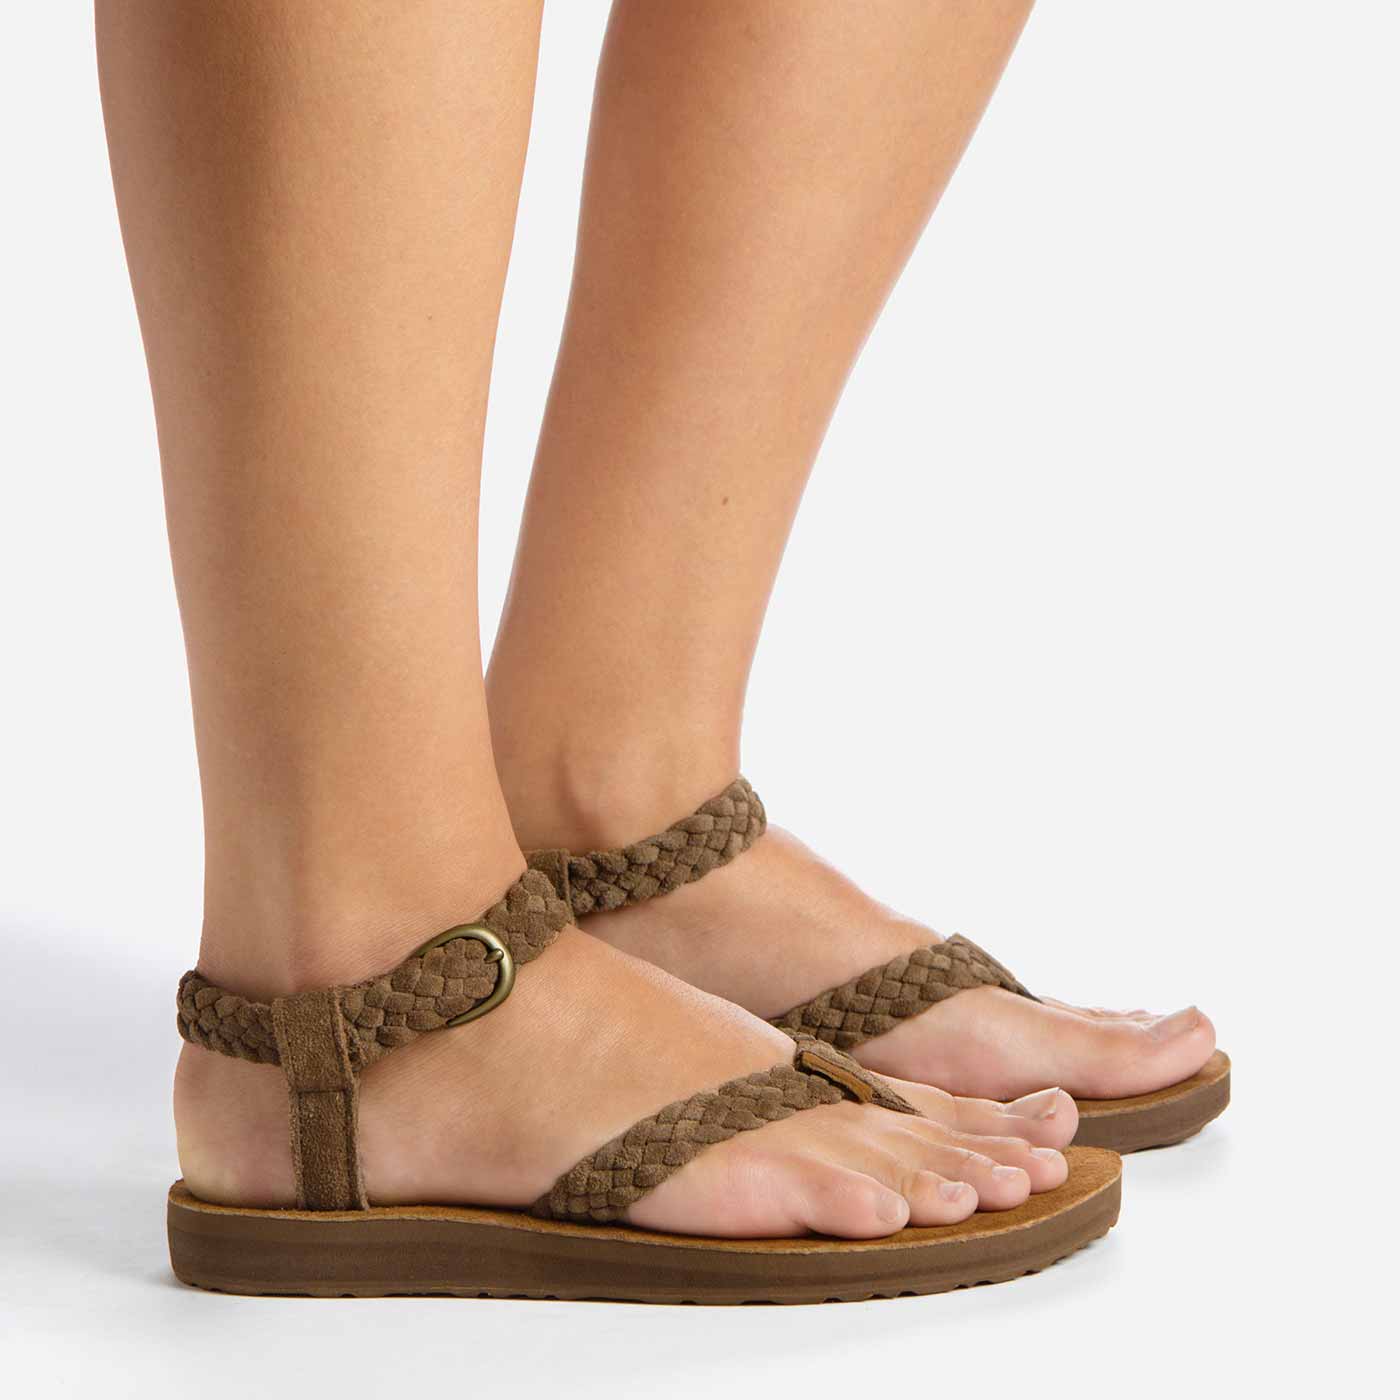 Er is een trend elke dag Onbelangrijk Teva® Original Sandal Suede Braid Sandals for Women | Teva® UK